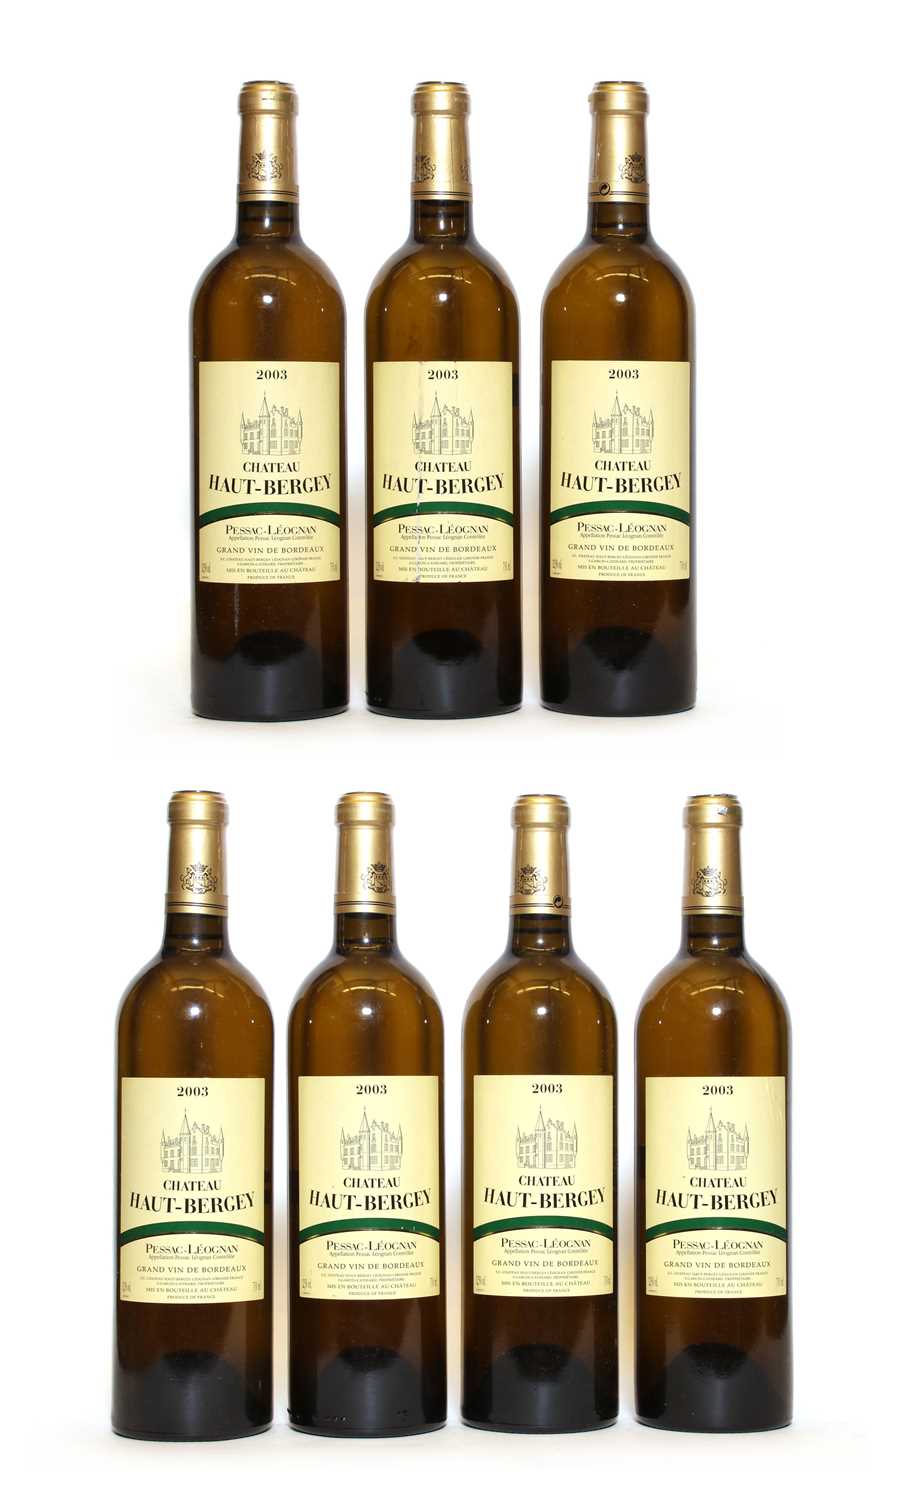 Lot 26 - Chateau Haut-Bergey Blanc, Pessac-Leognan, 2003, seven bottles